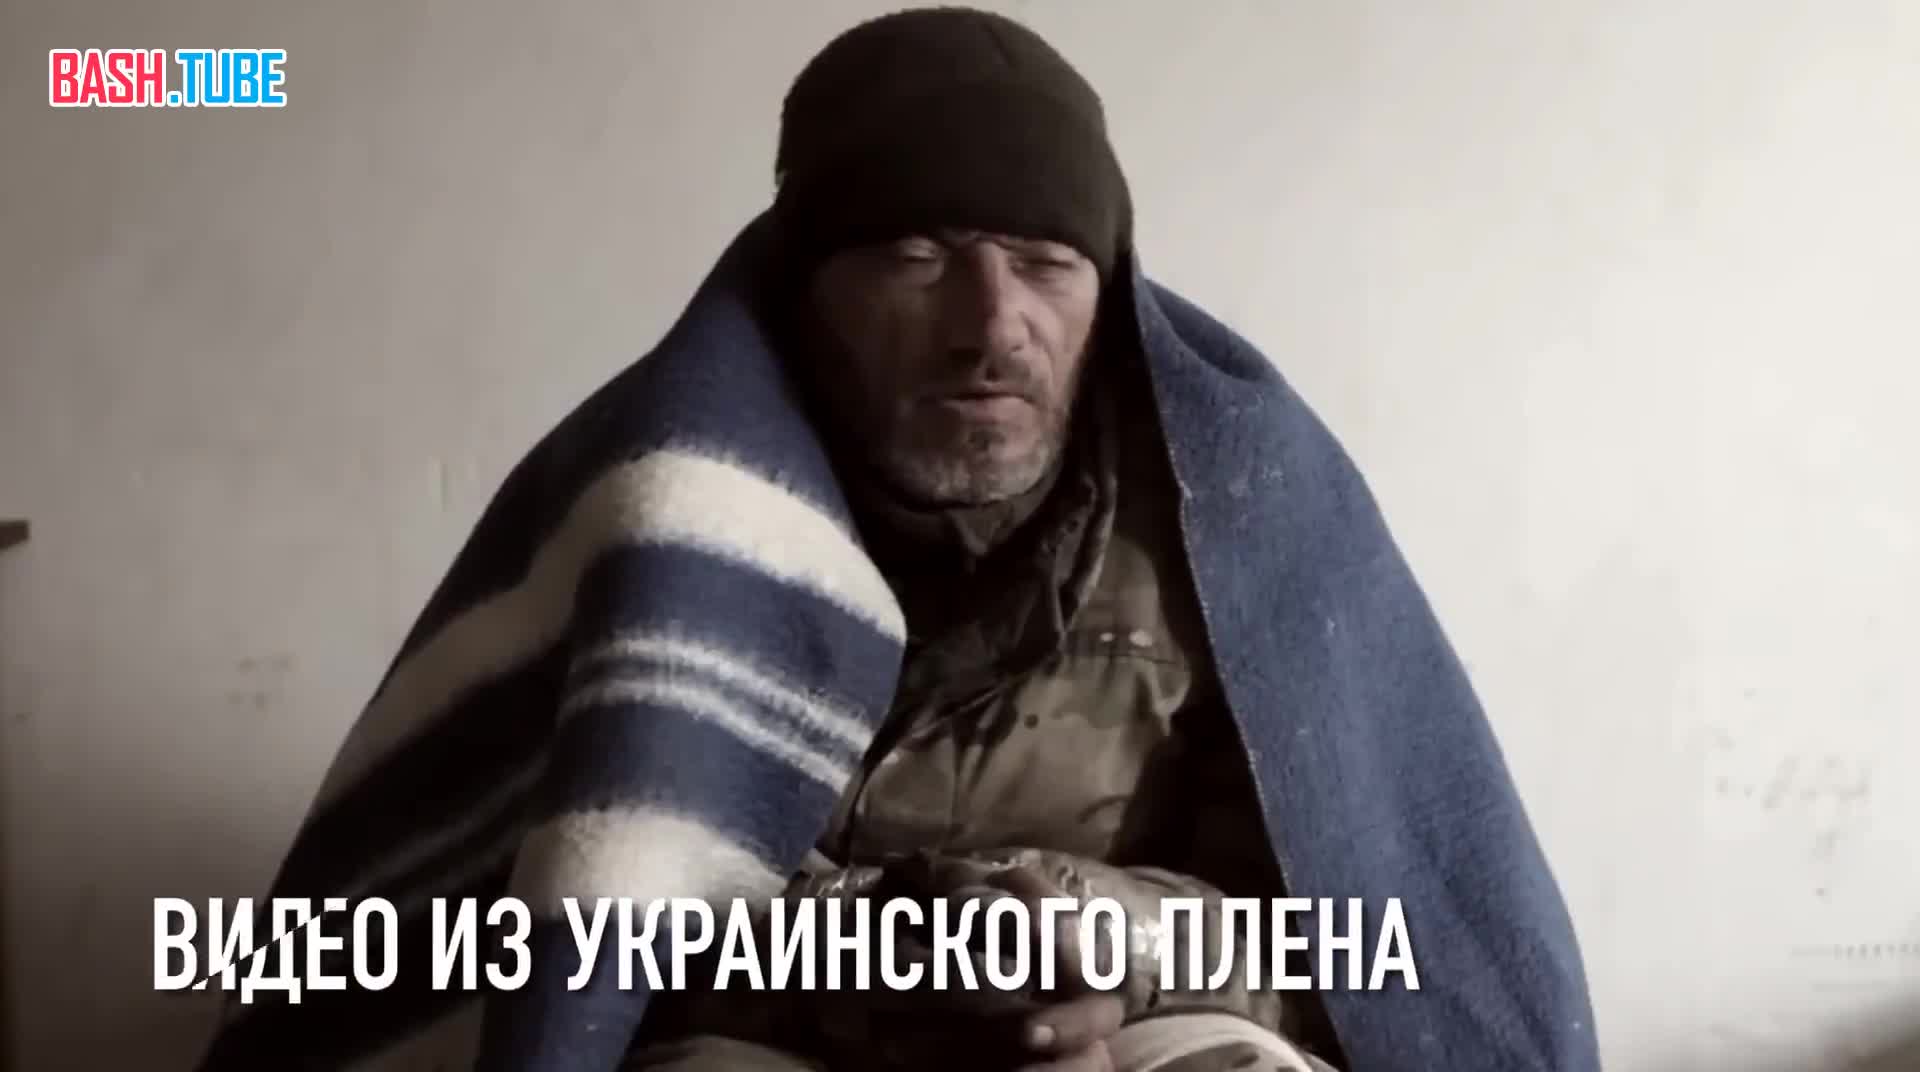  Видео казни одного из предателей ЧВК Вагнер, который осуществил побег на сторону Украины